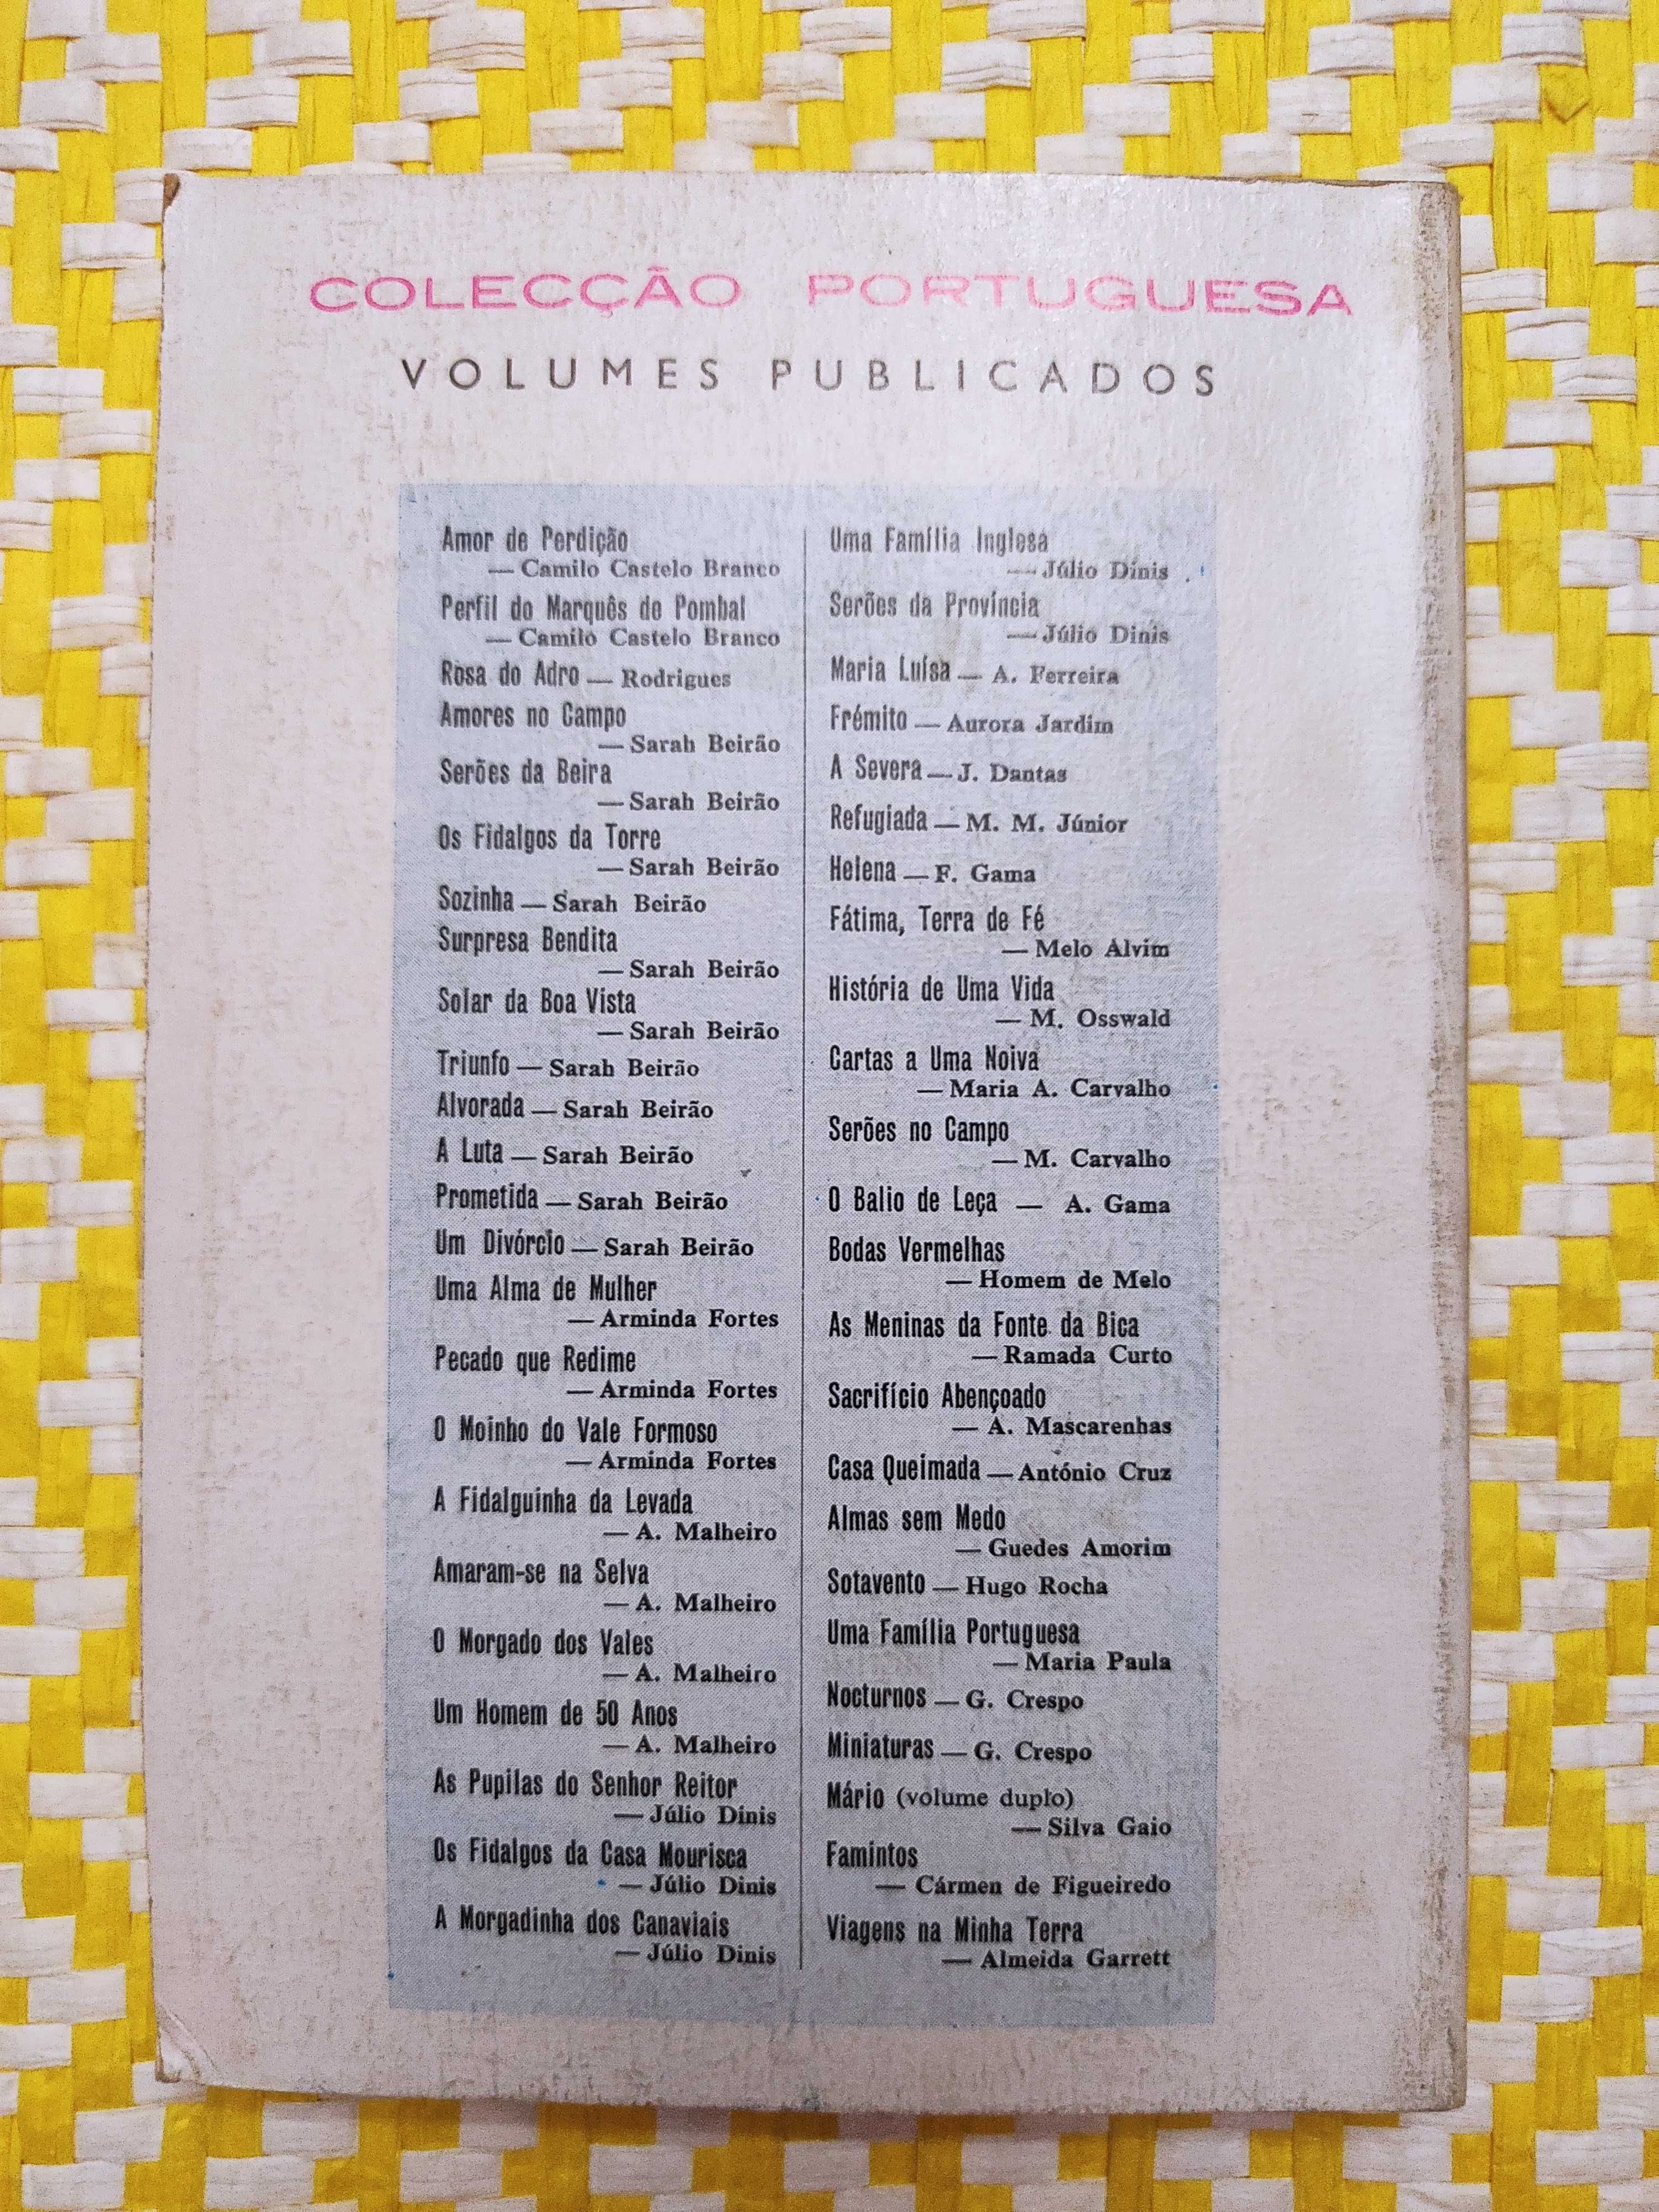 AMARAM-SE NA SELVA
Alexandre Malheiro
Editora: Porto Editora